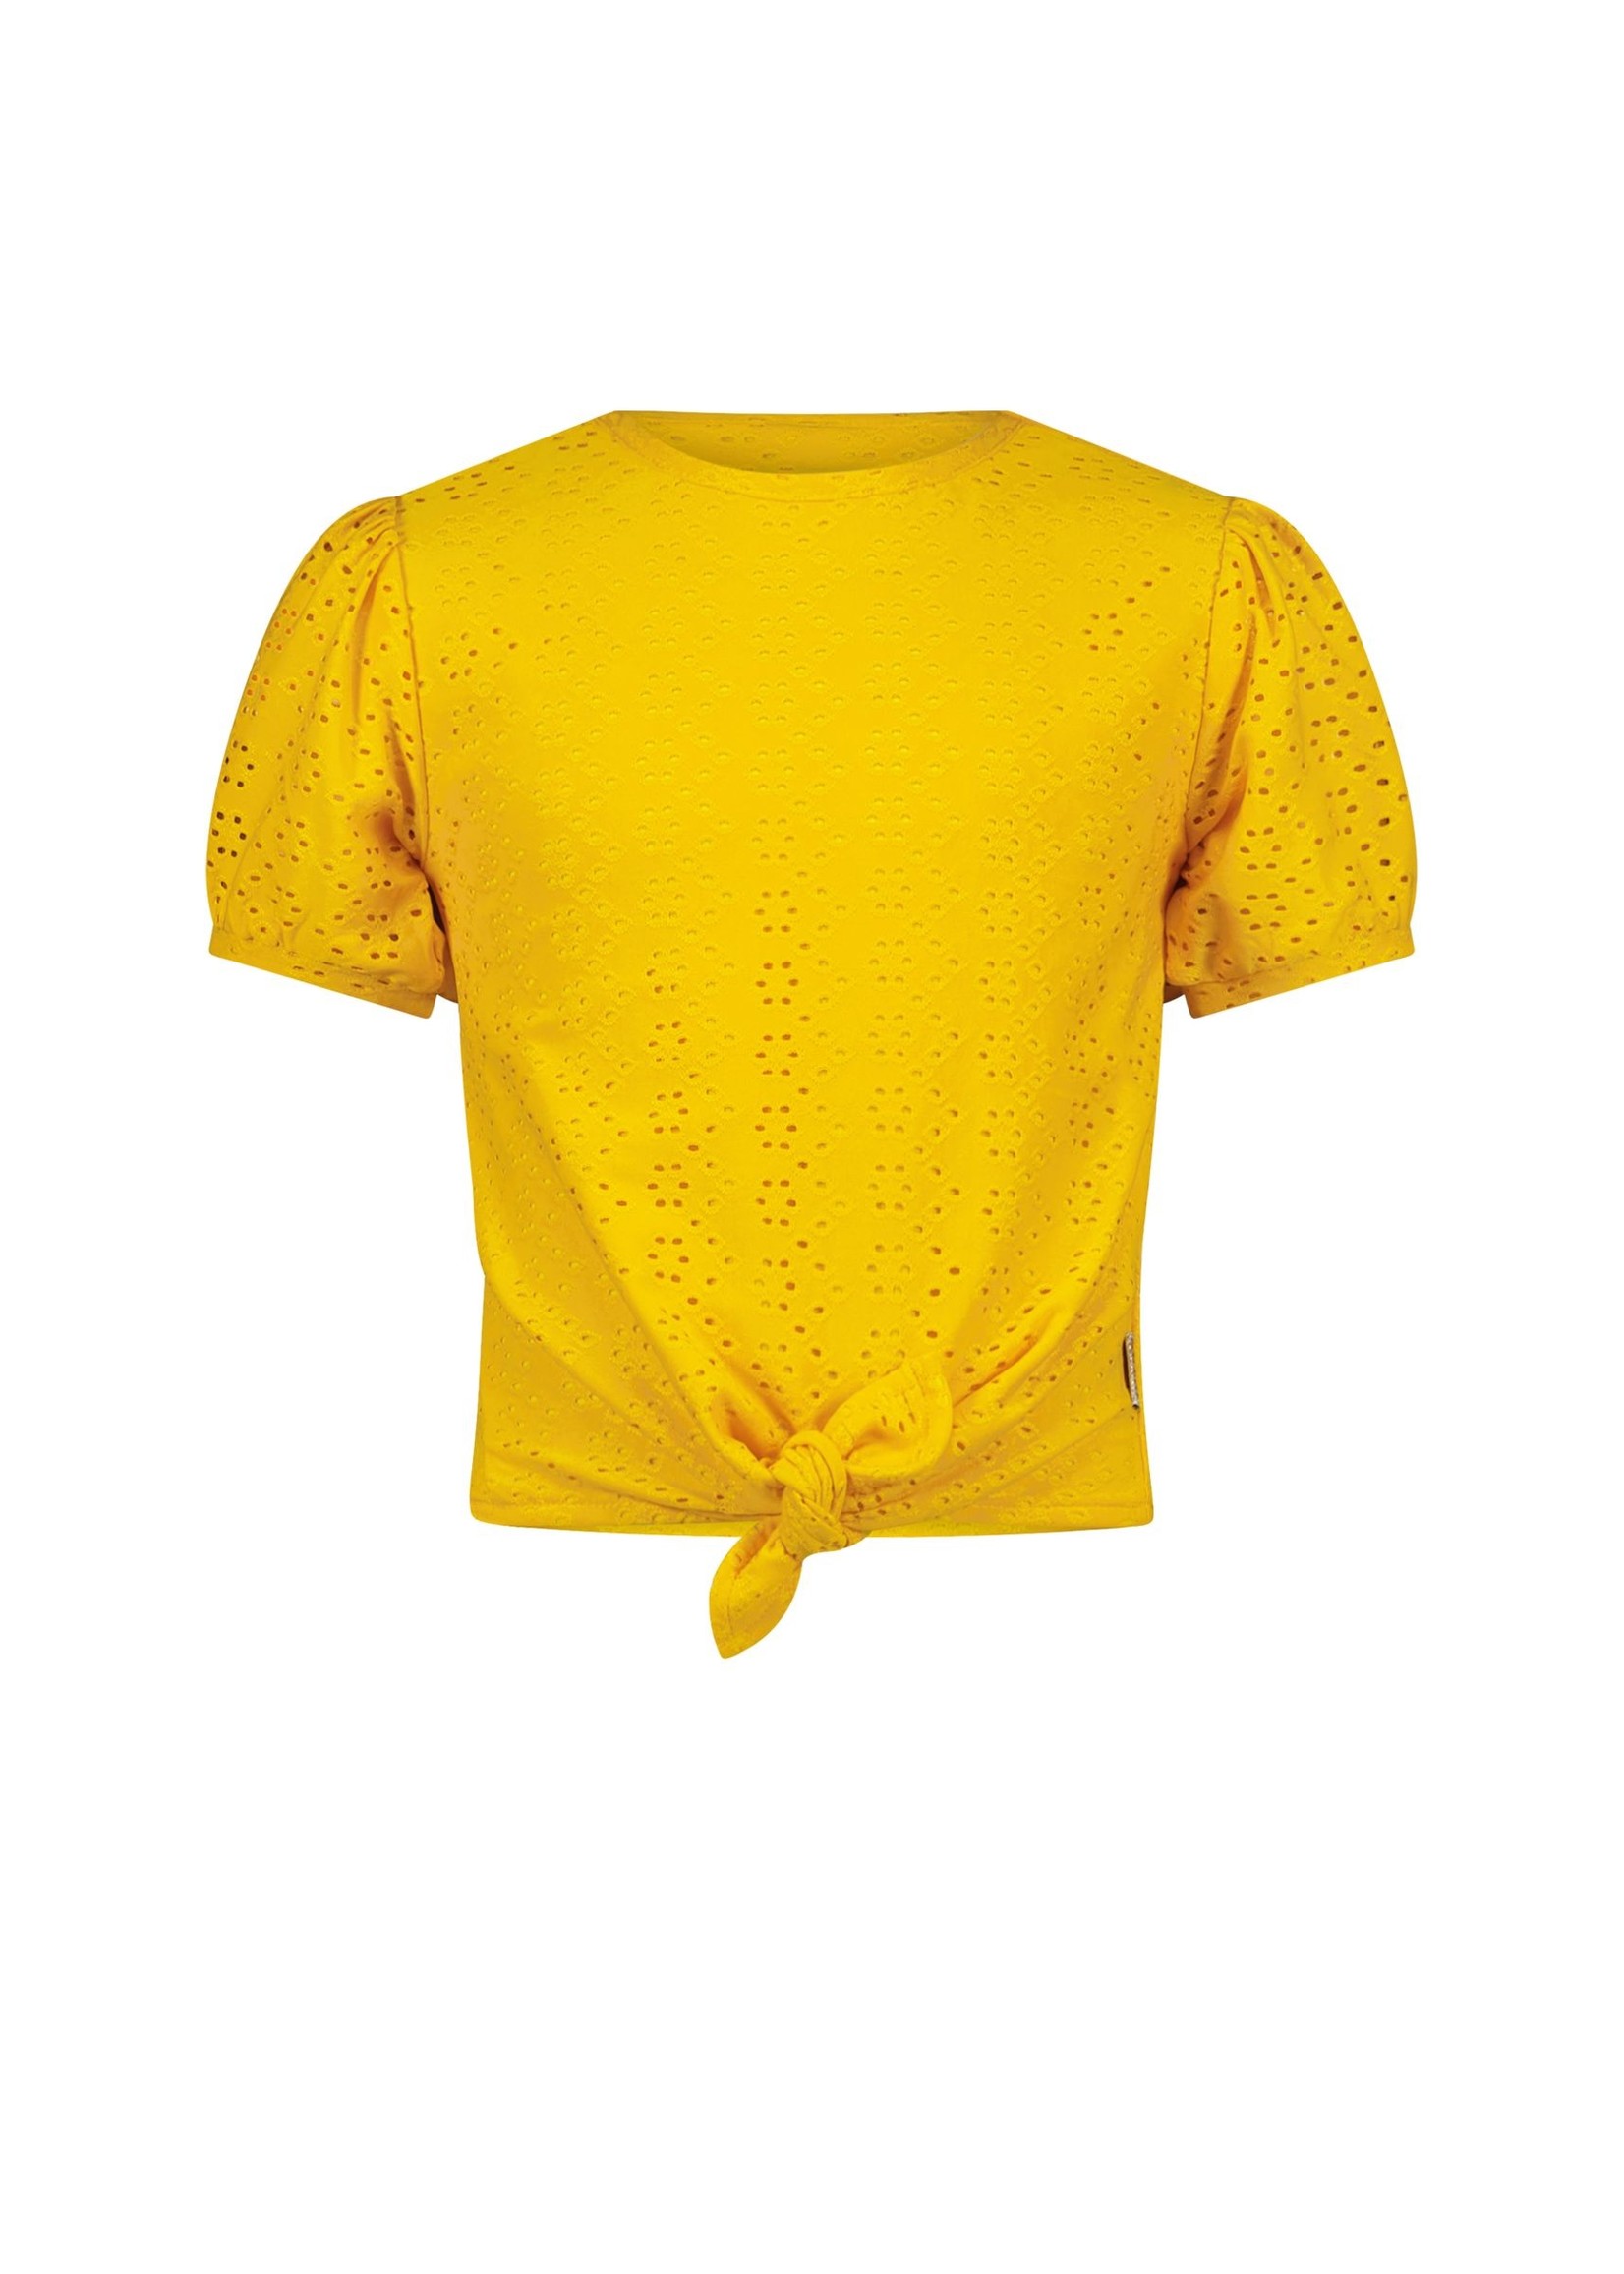 B.nosy Shirt Lemon Chrome